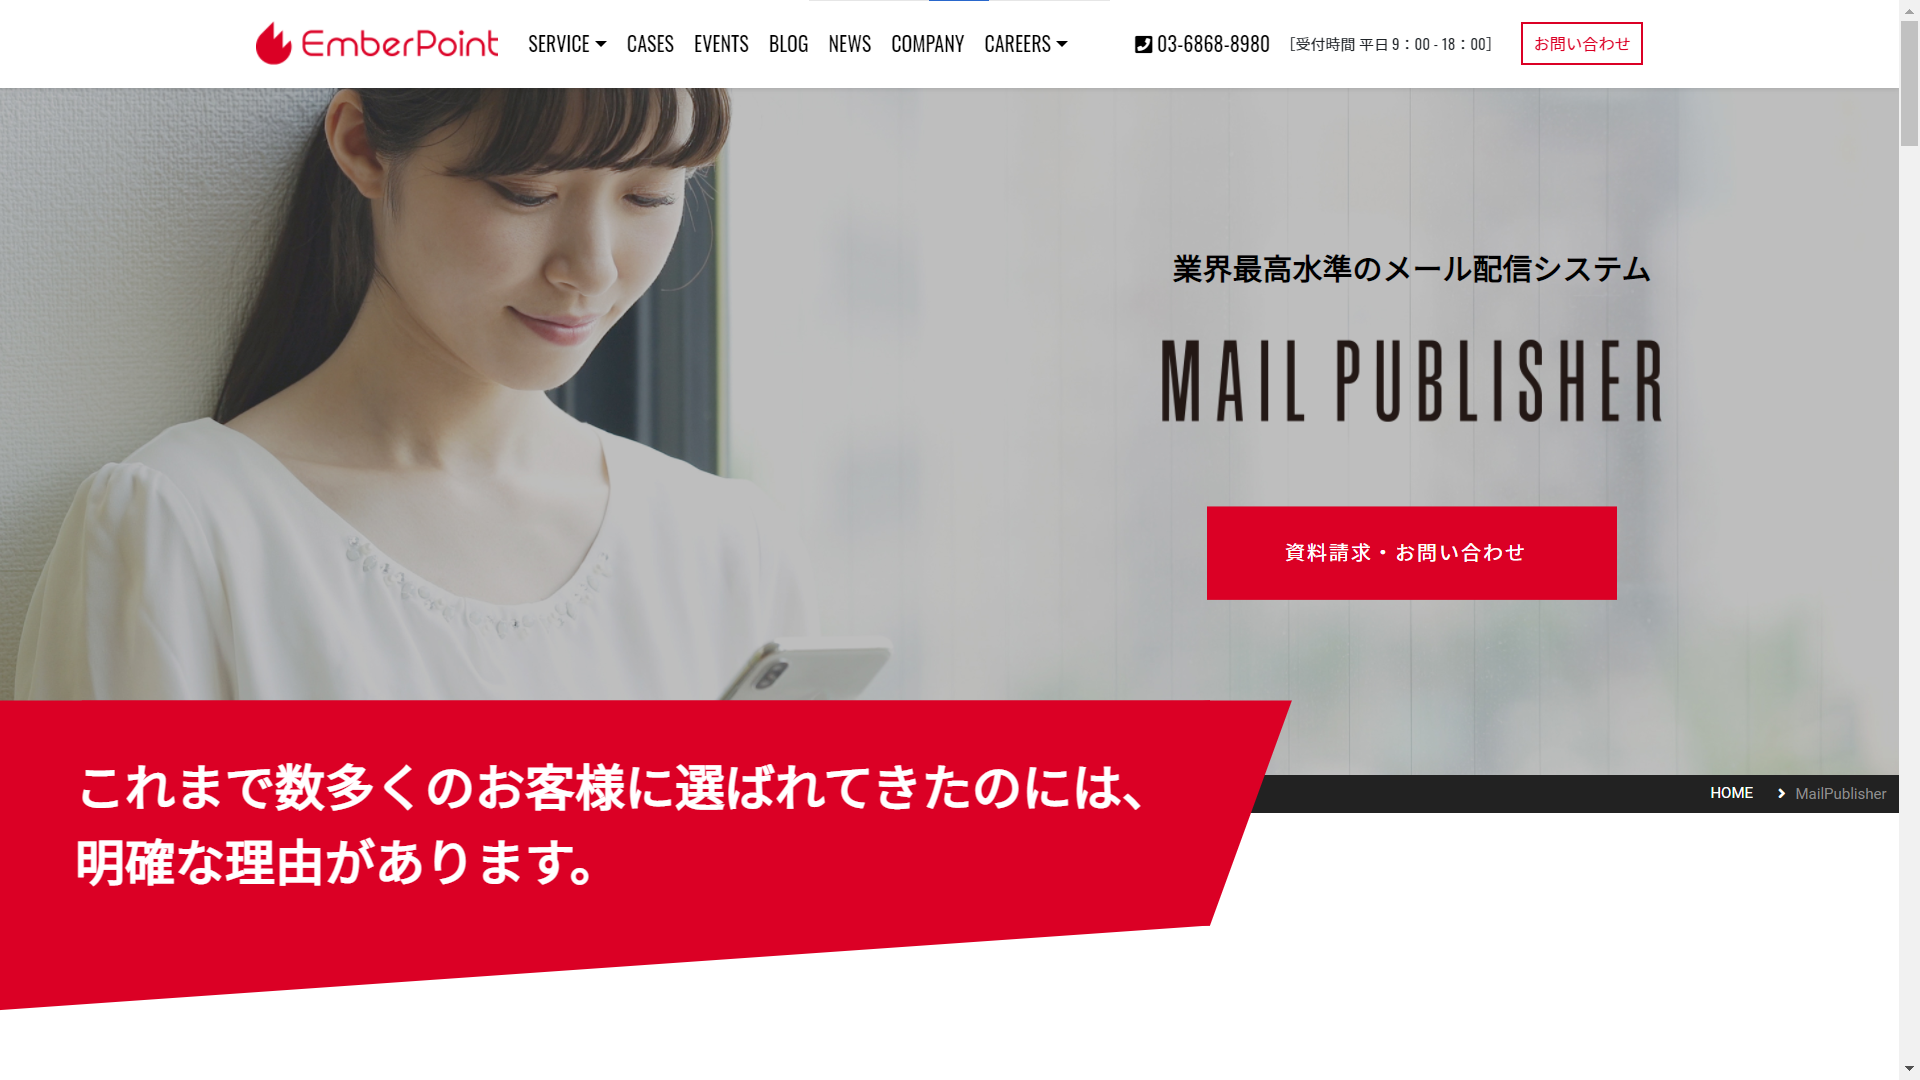 メール配信システムの紹介 - MailPublisher